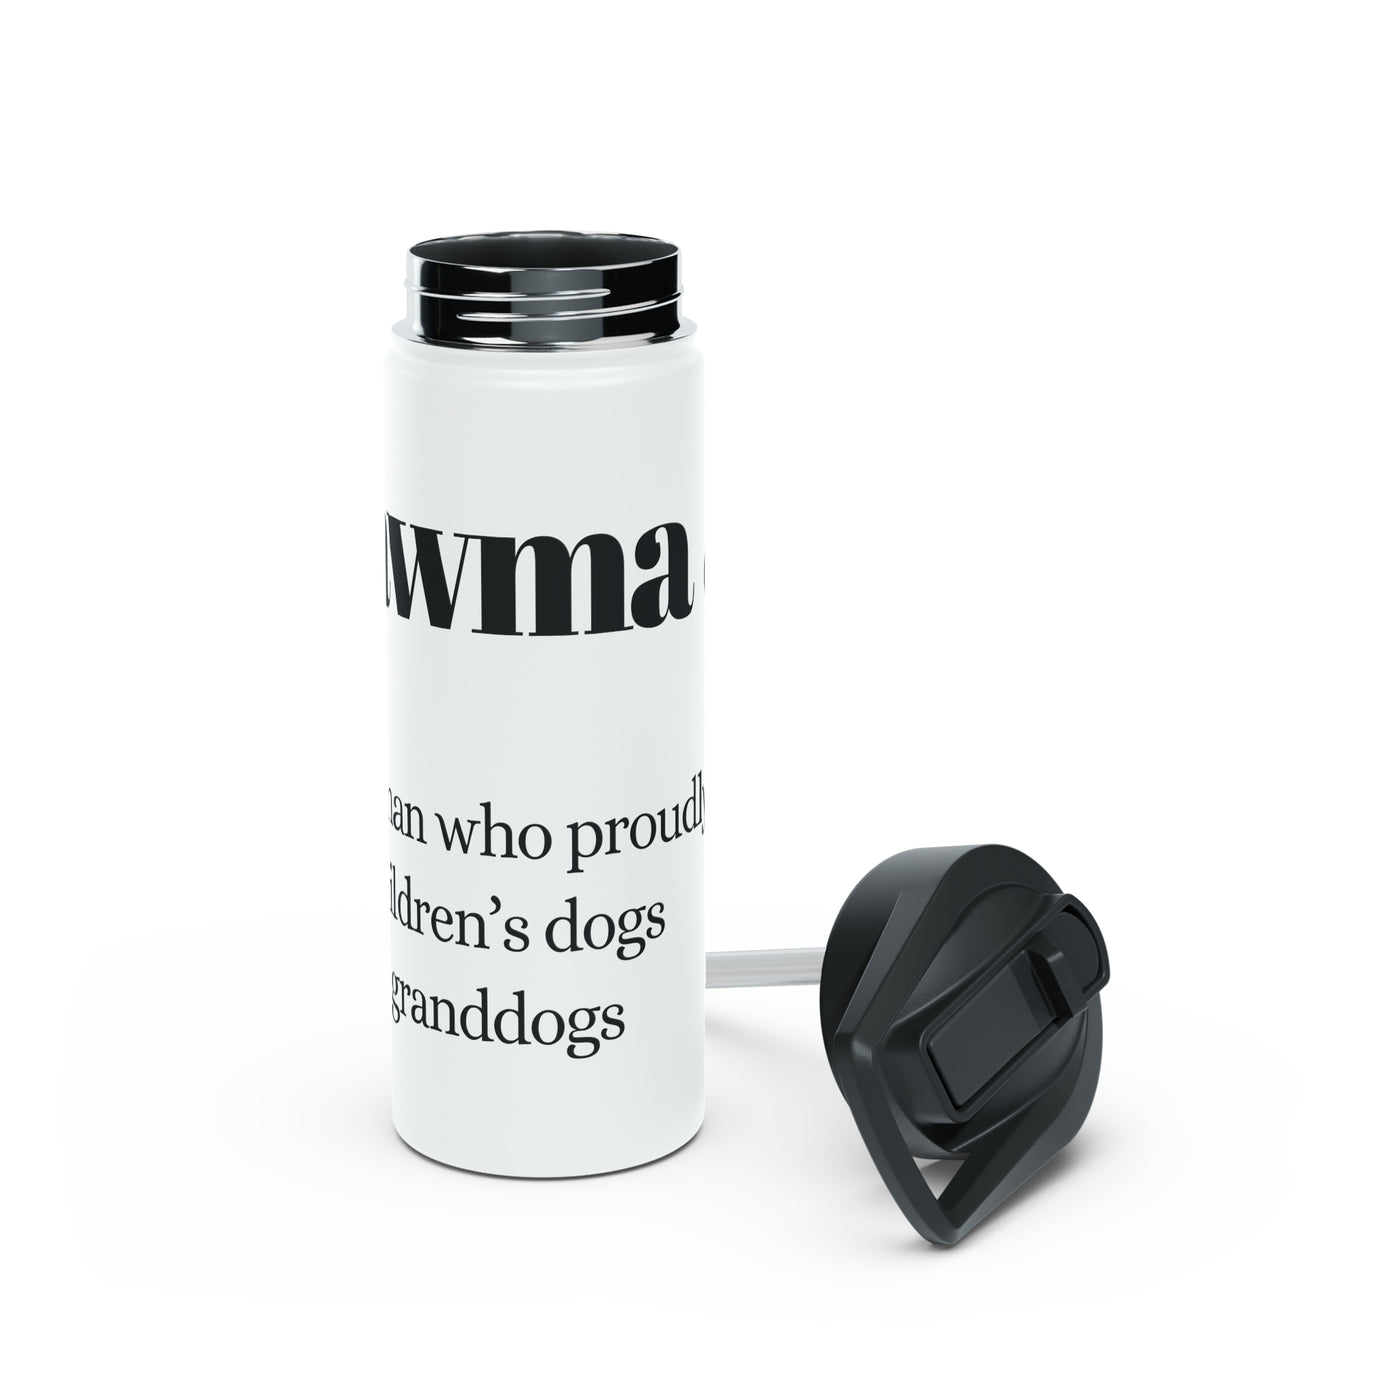 Pawma Noun Water Bottle